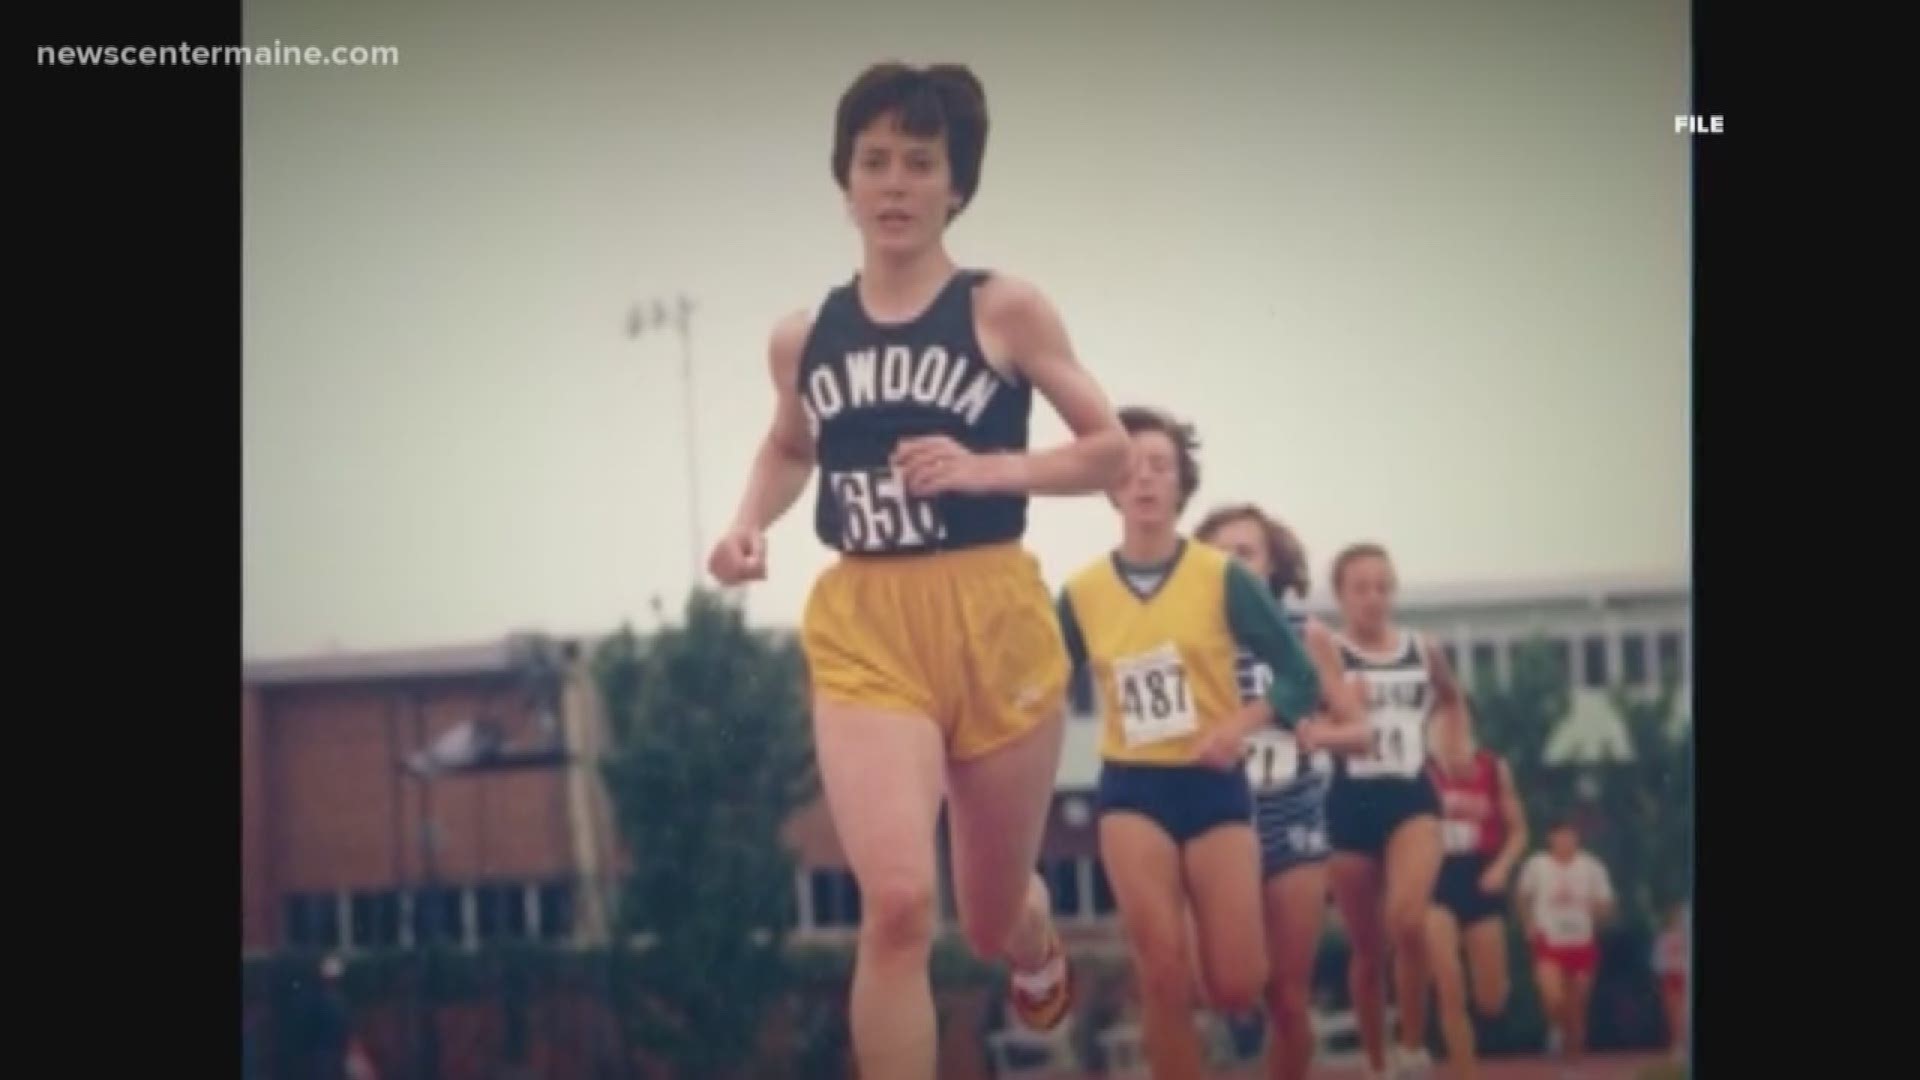 Joan Benoit Samuelson, 61, will run the 2019 Boston Marathon 40 years after her 1979 win.